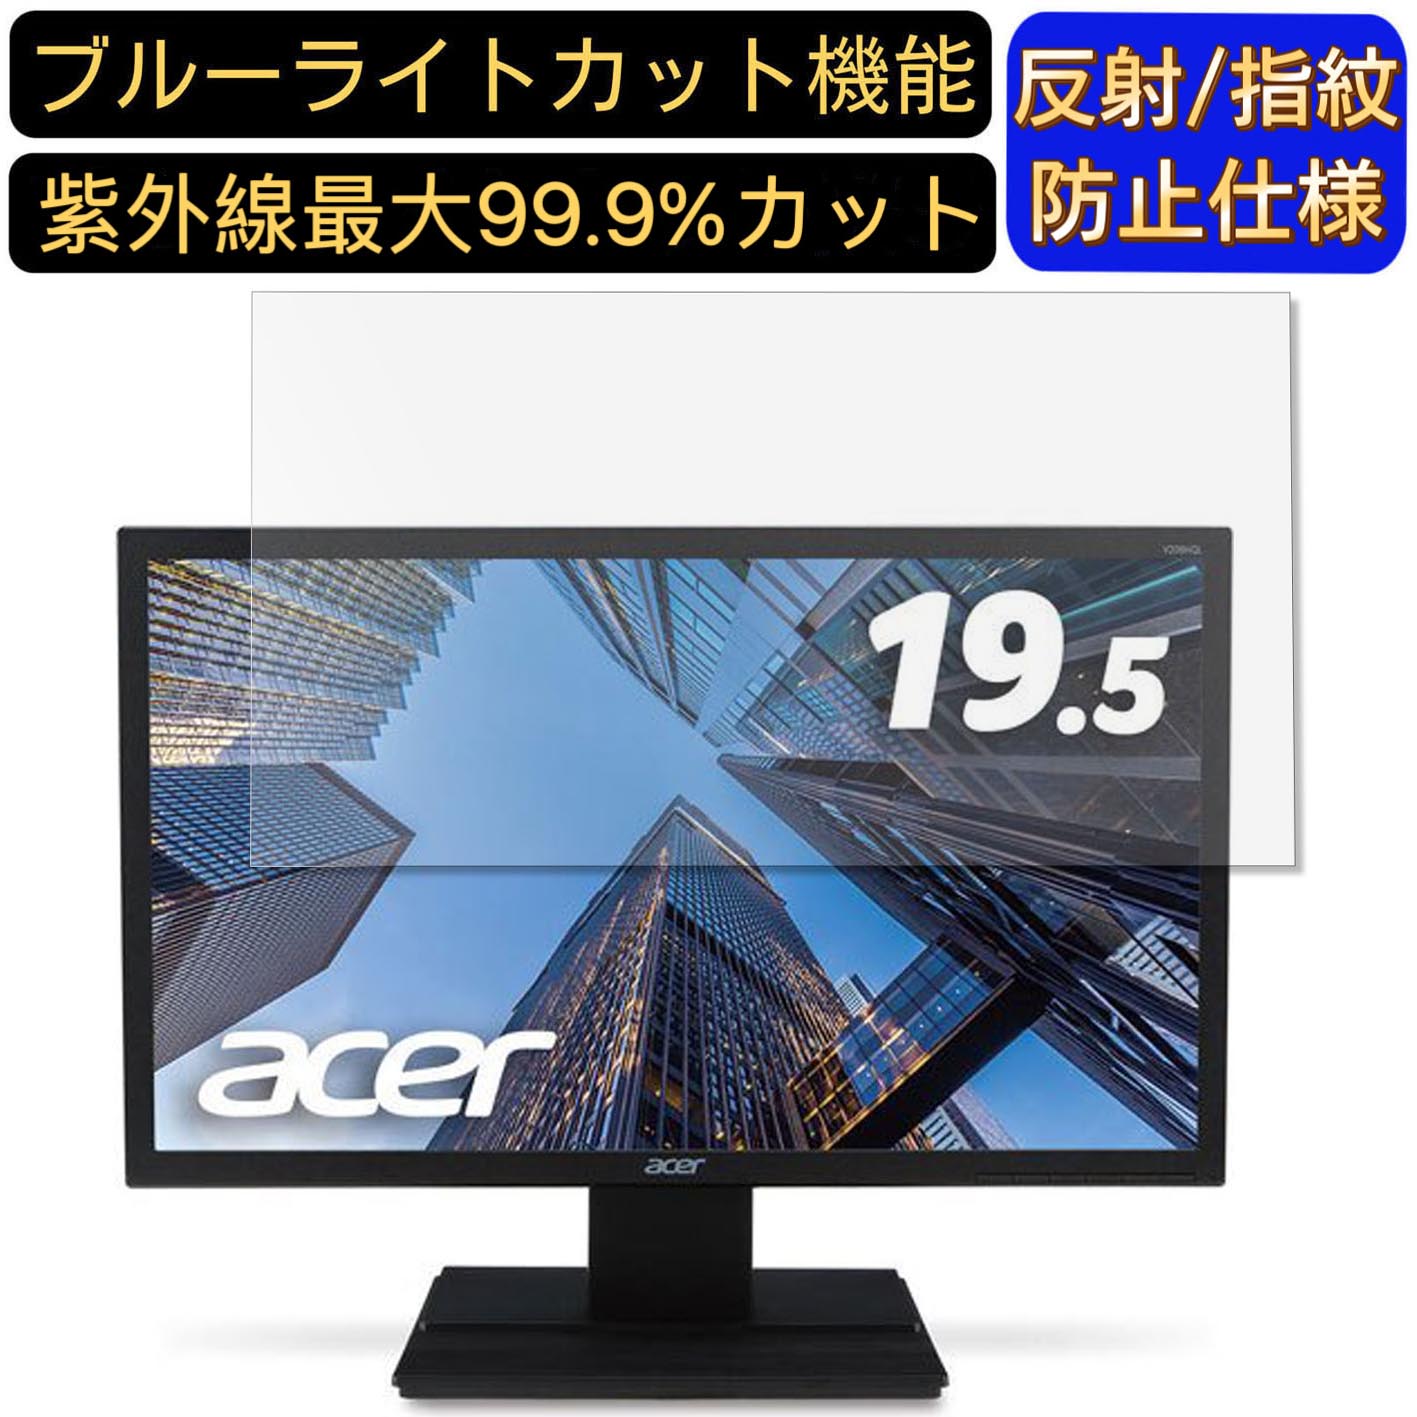 【ポイント2倍】Acer V206HQLbmdf (V6) 19.5